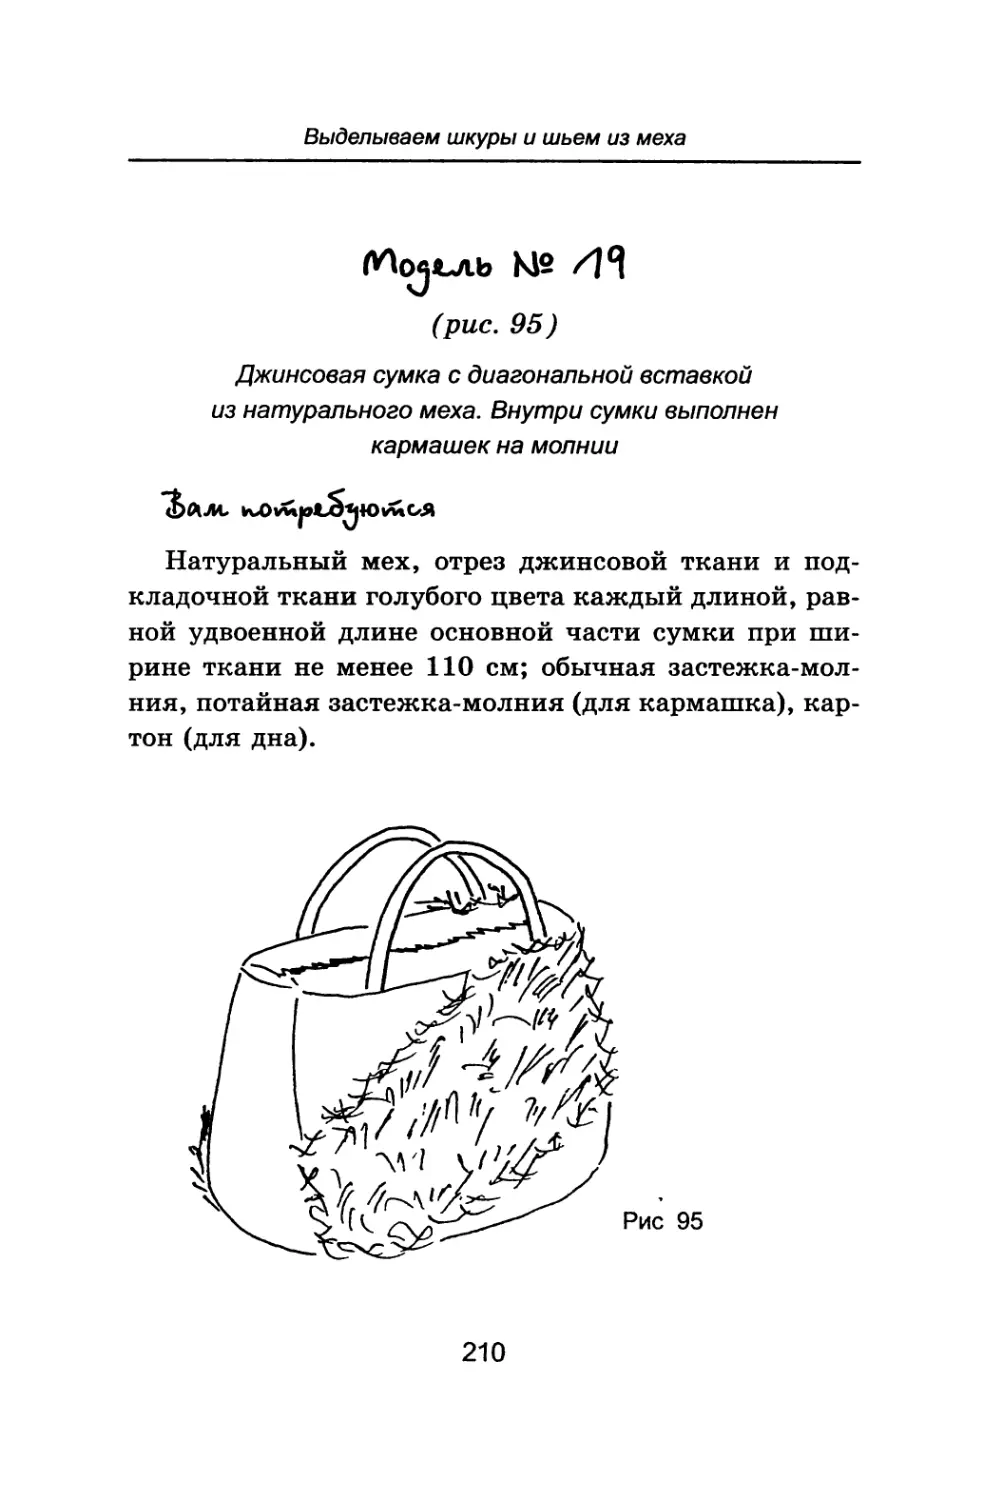 Модель №19 Джинсовая сумка с диагональной вставкой из натурального меха. Внутри сумки выполнен кармашек на молнии